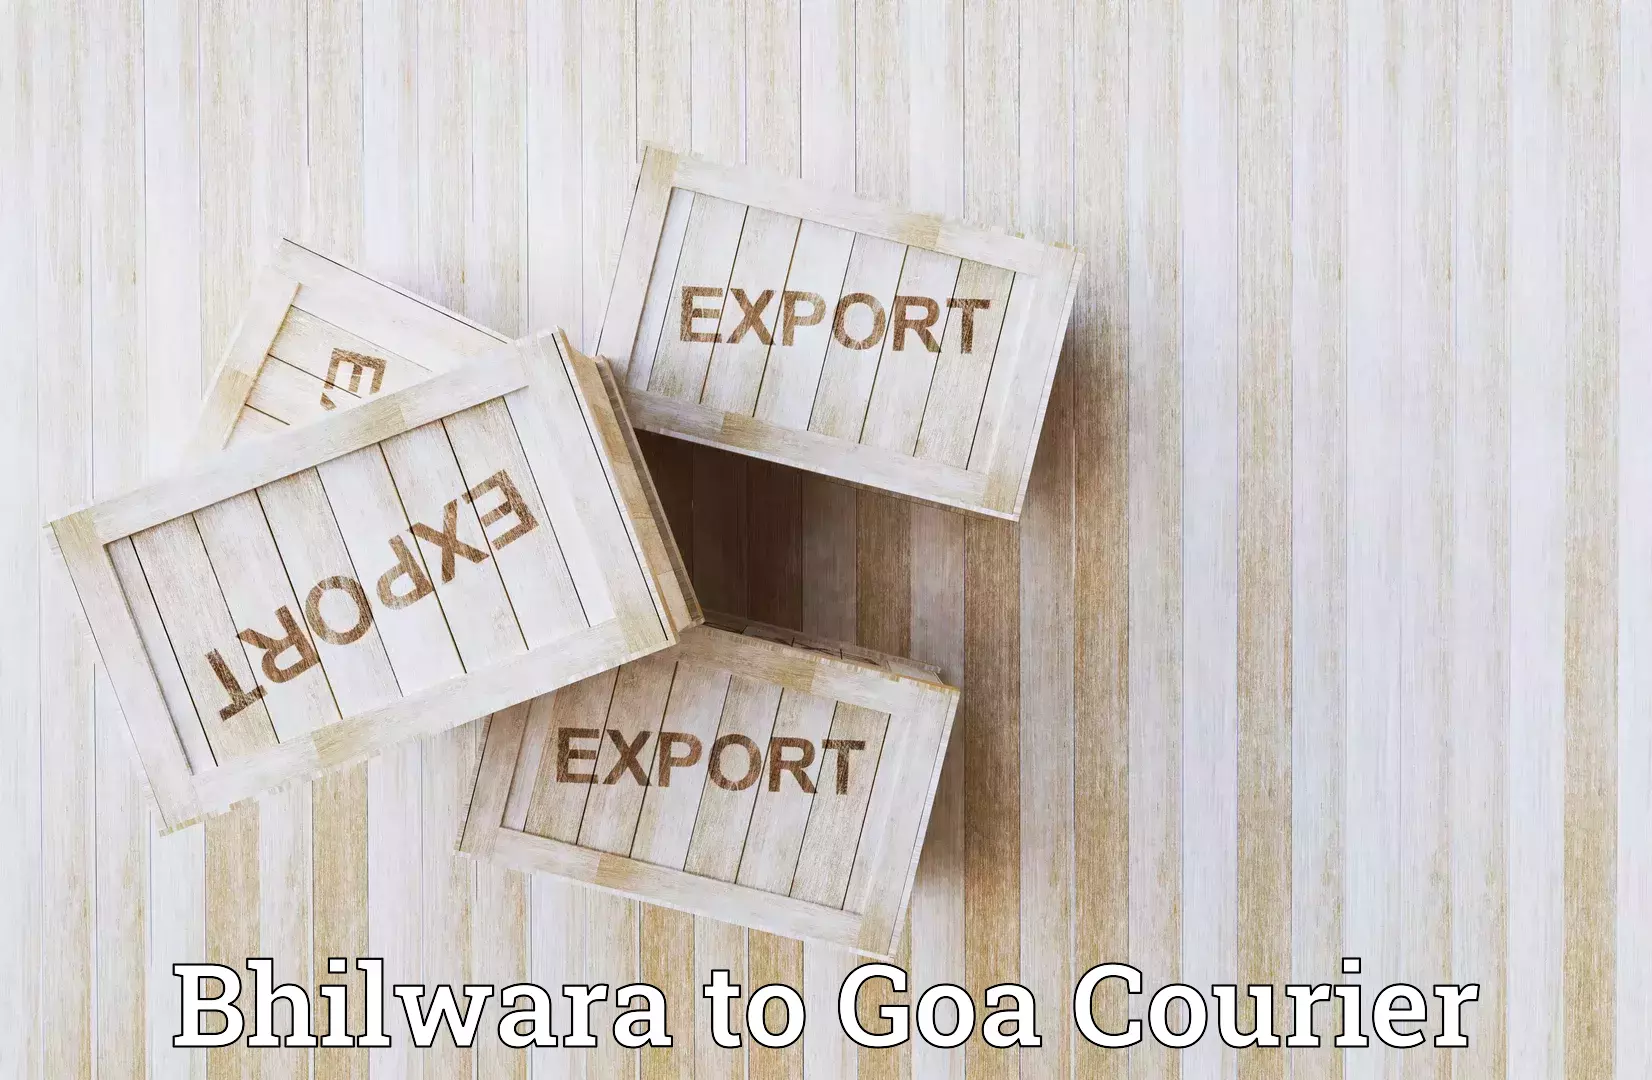 Flexible shipping options Bhilwara to NIT Goa